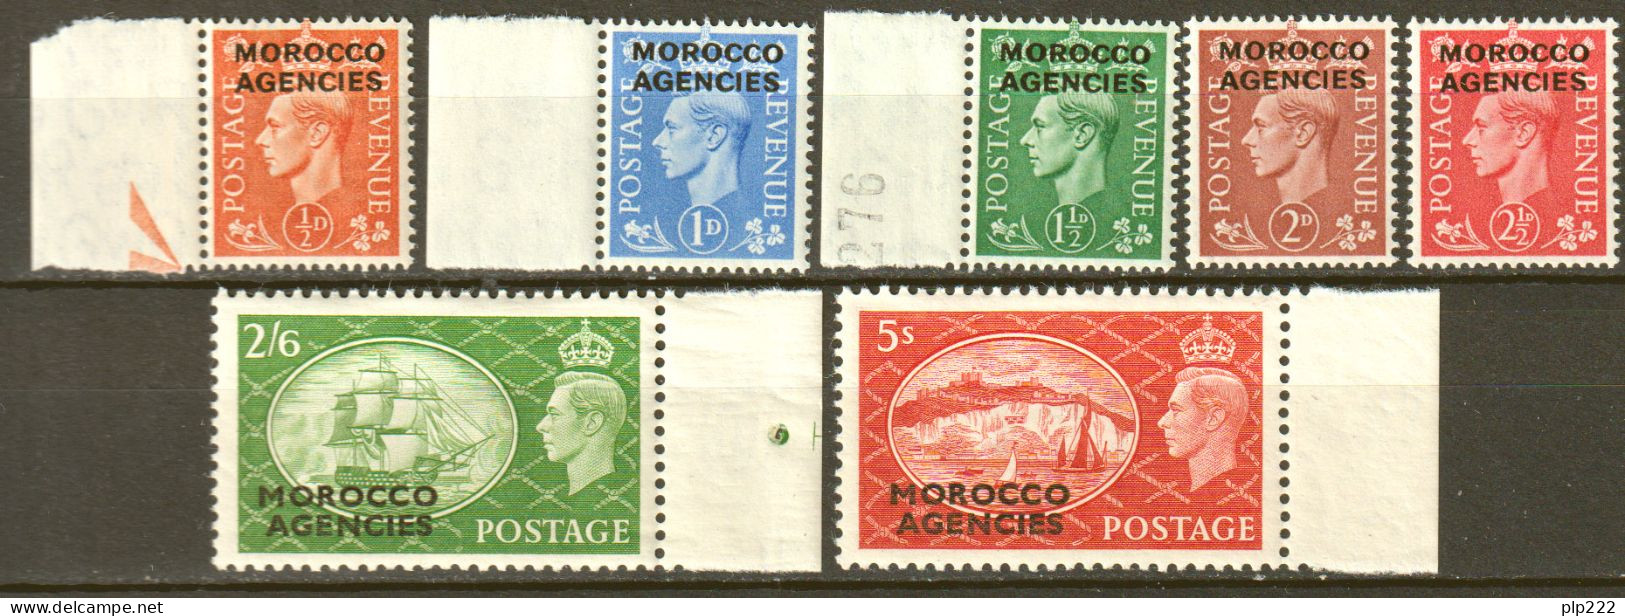 Marocco 1951 Y.T.56/62 **/MNH VF - Morocco Agencies / Tangier (...-1958)